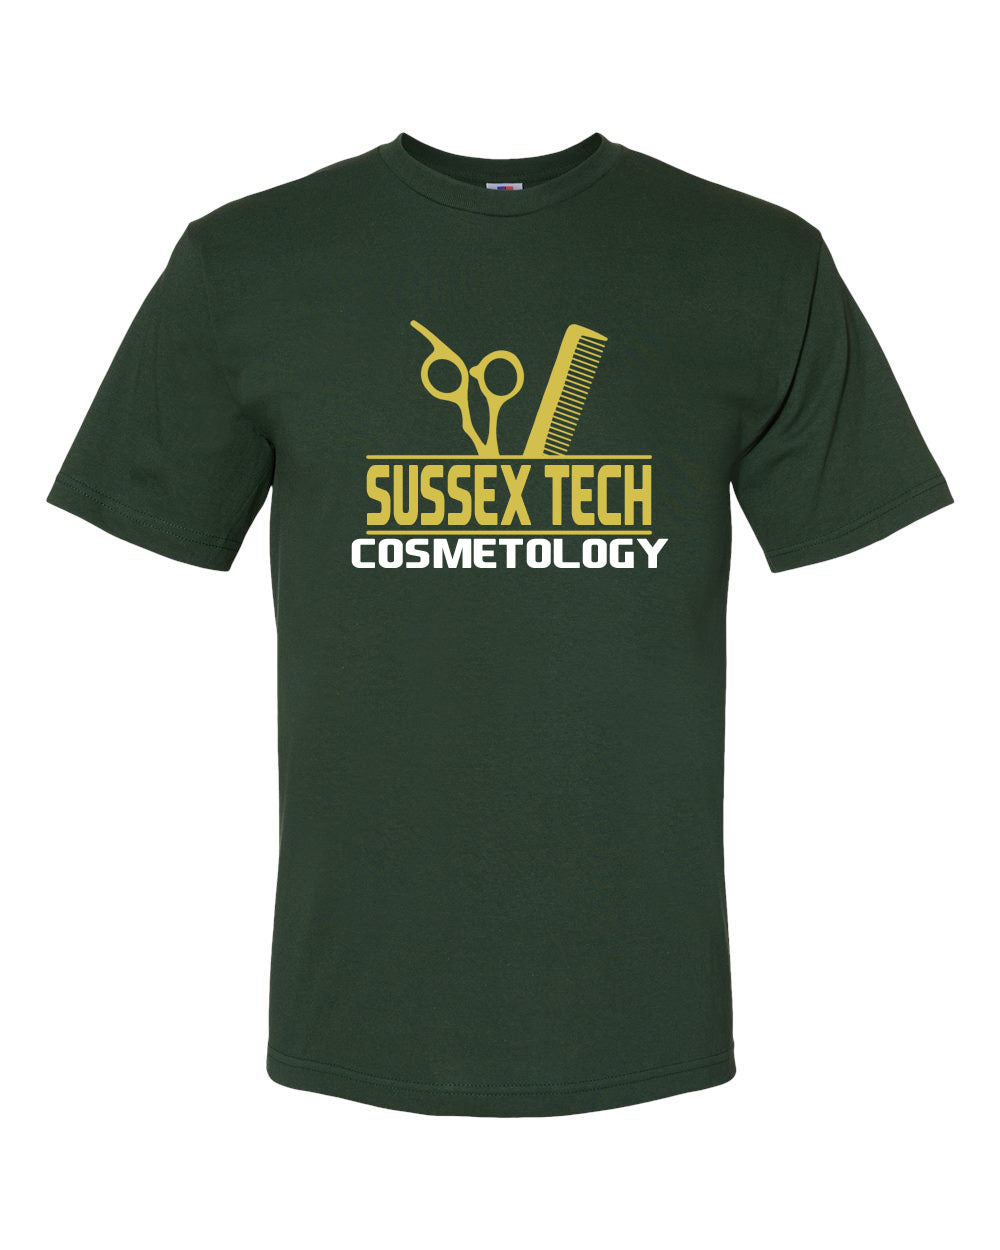 Sussex Tech Cosmetology Design 3 T-Shirt